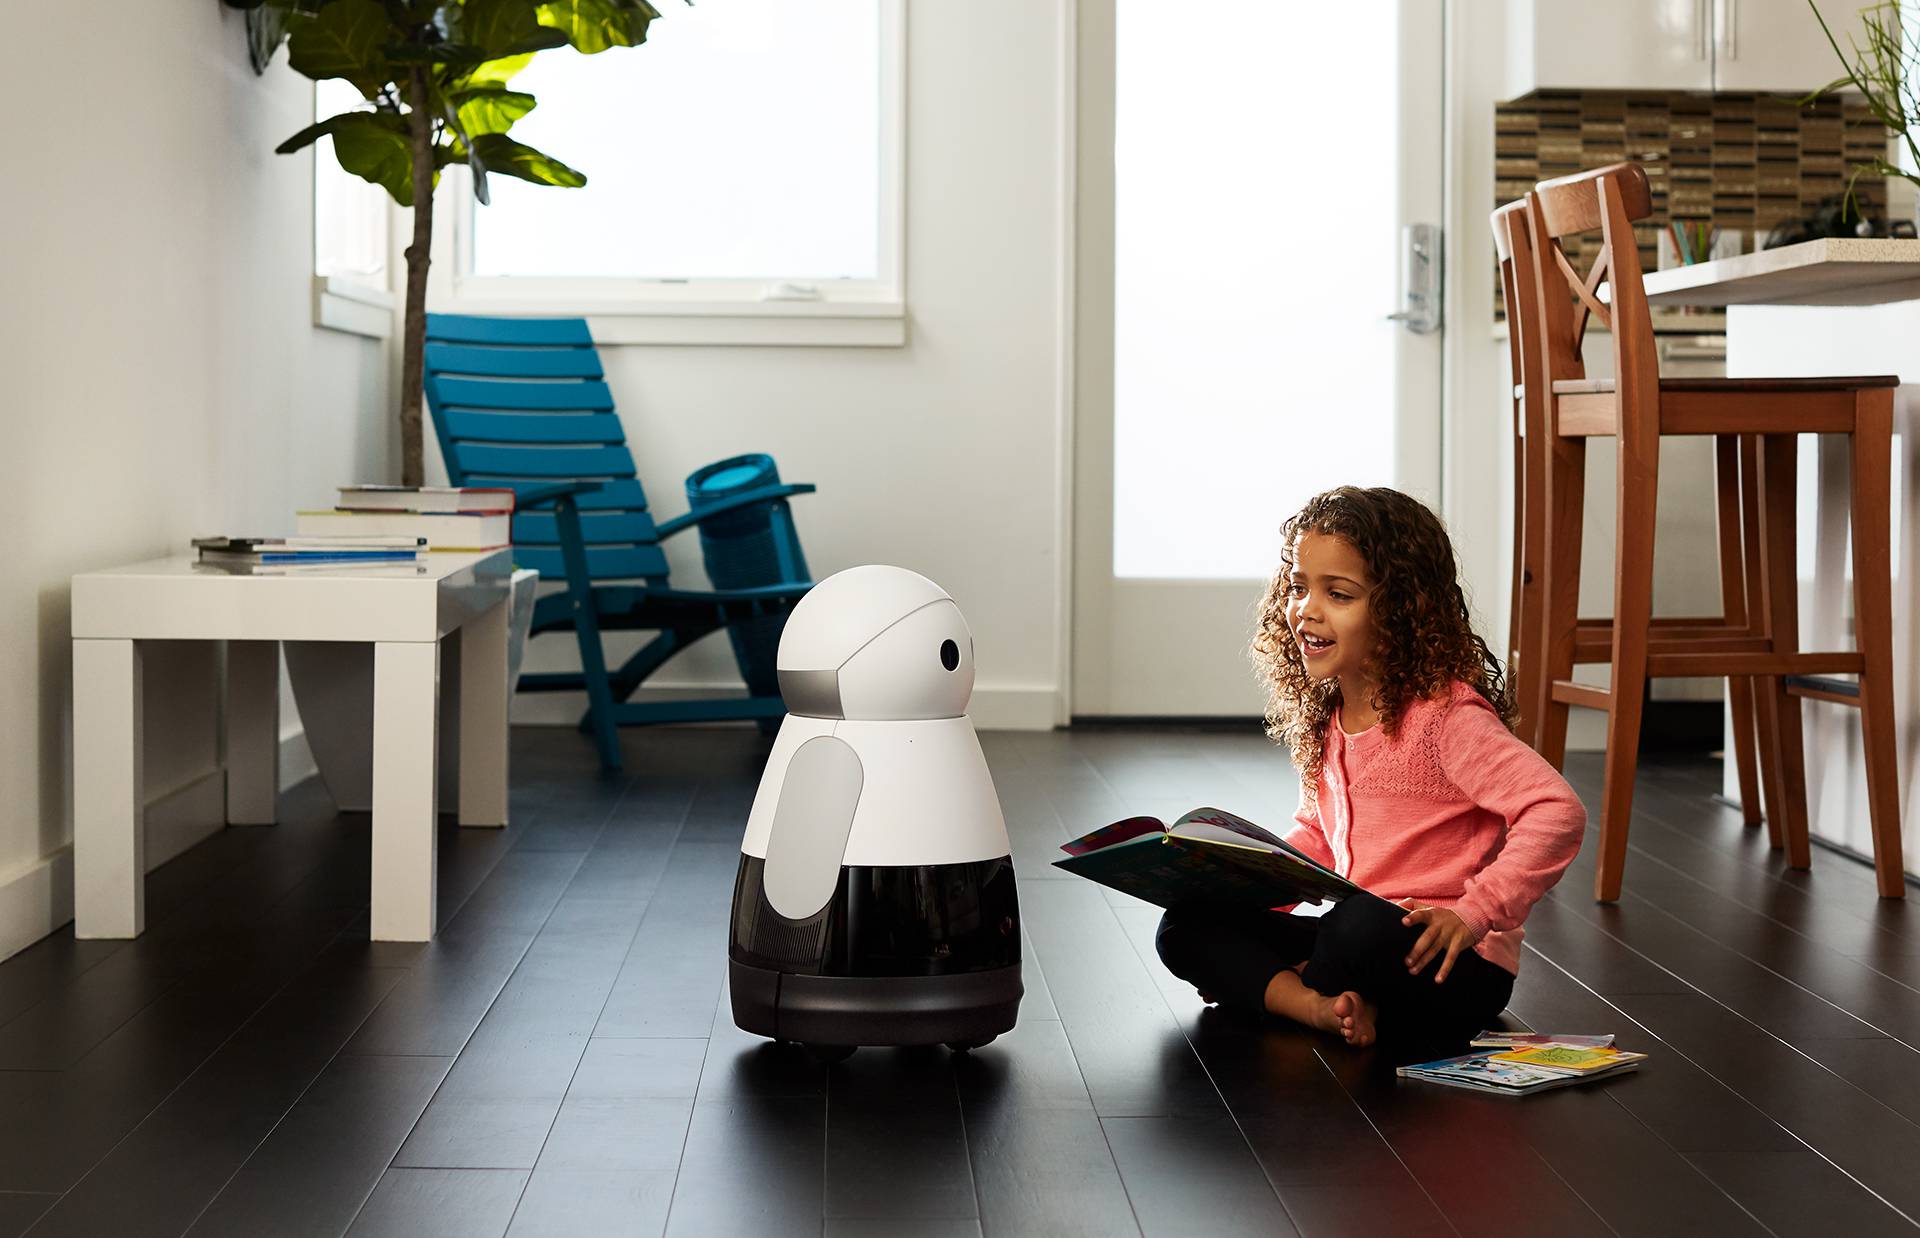 Simpatičan i pametan: Robot Kuri kao da je stigao iz crtića